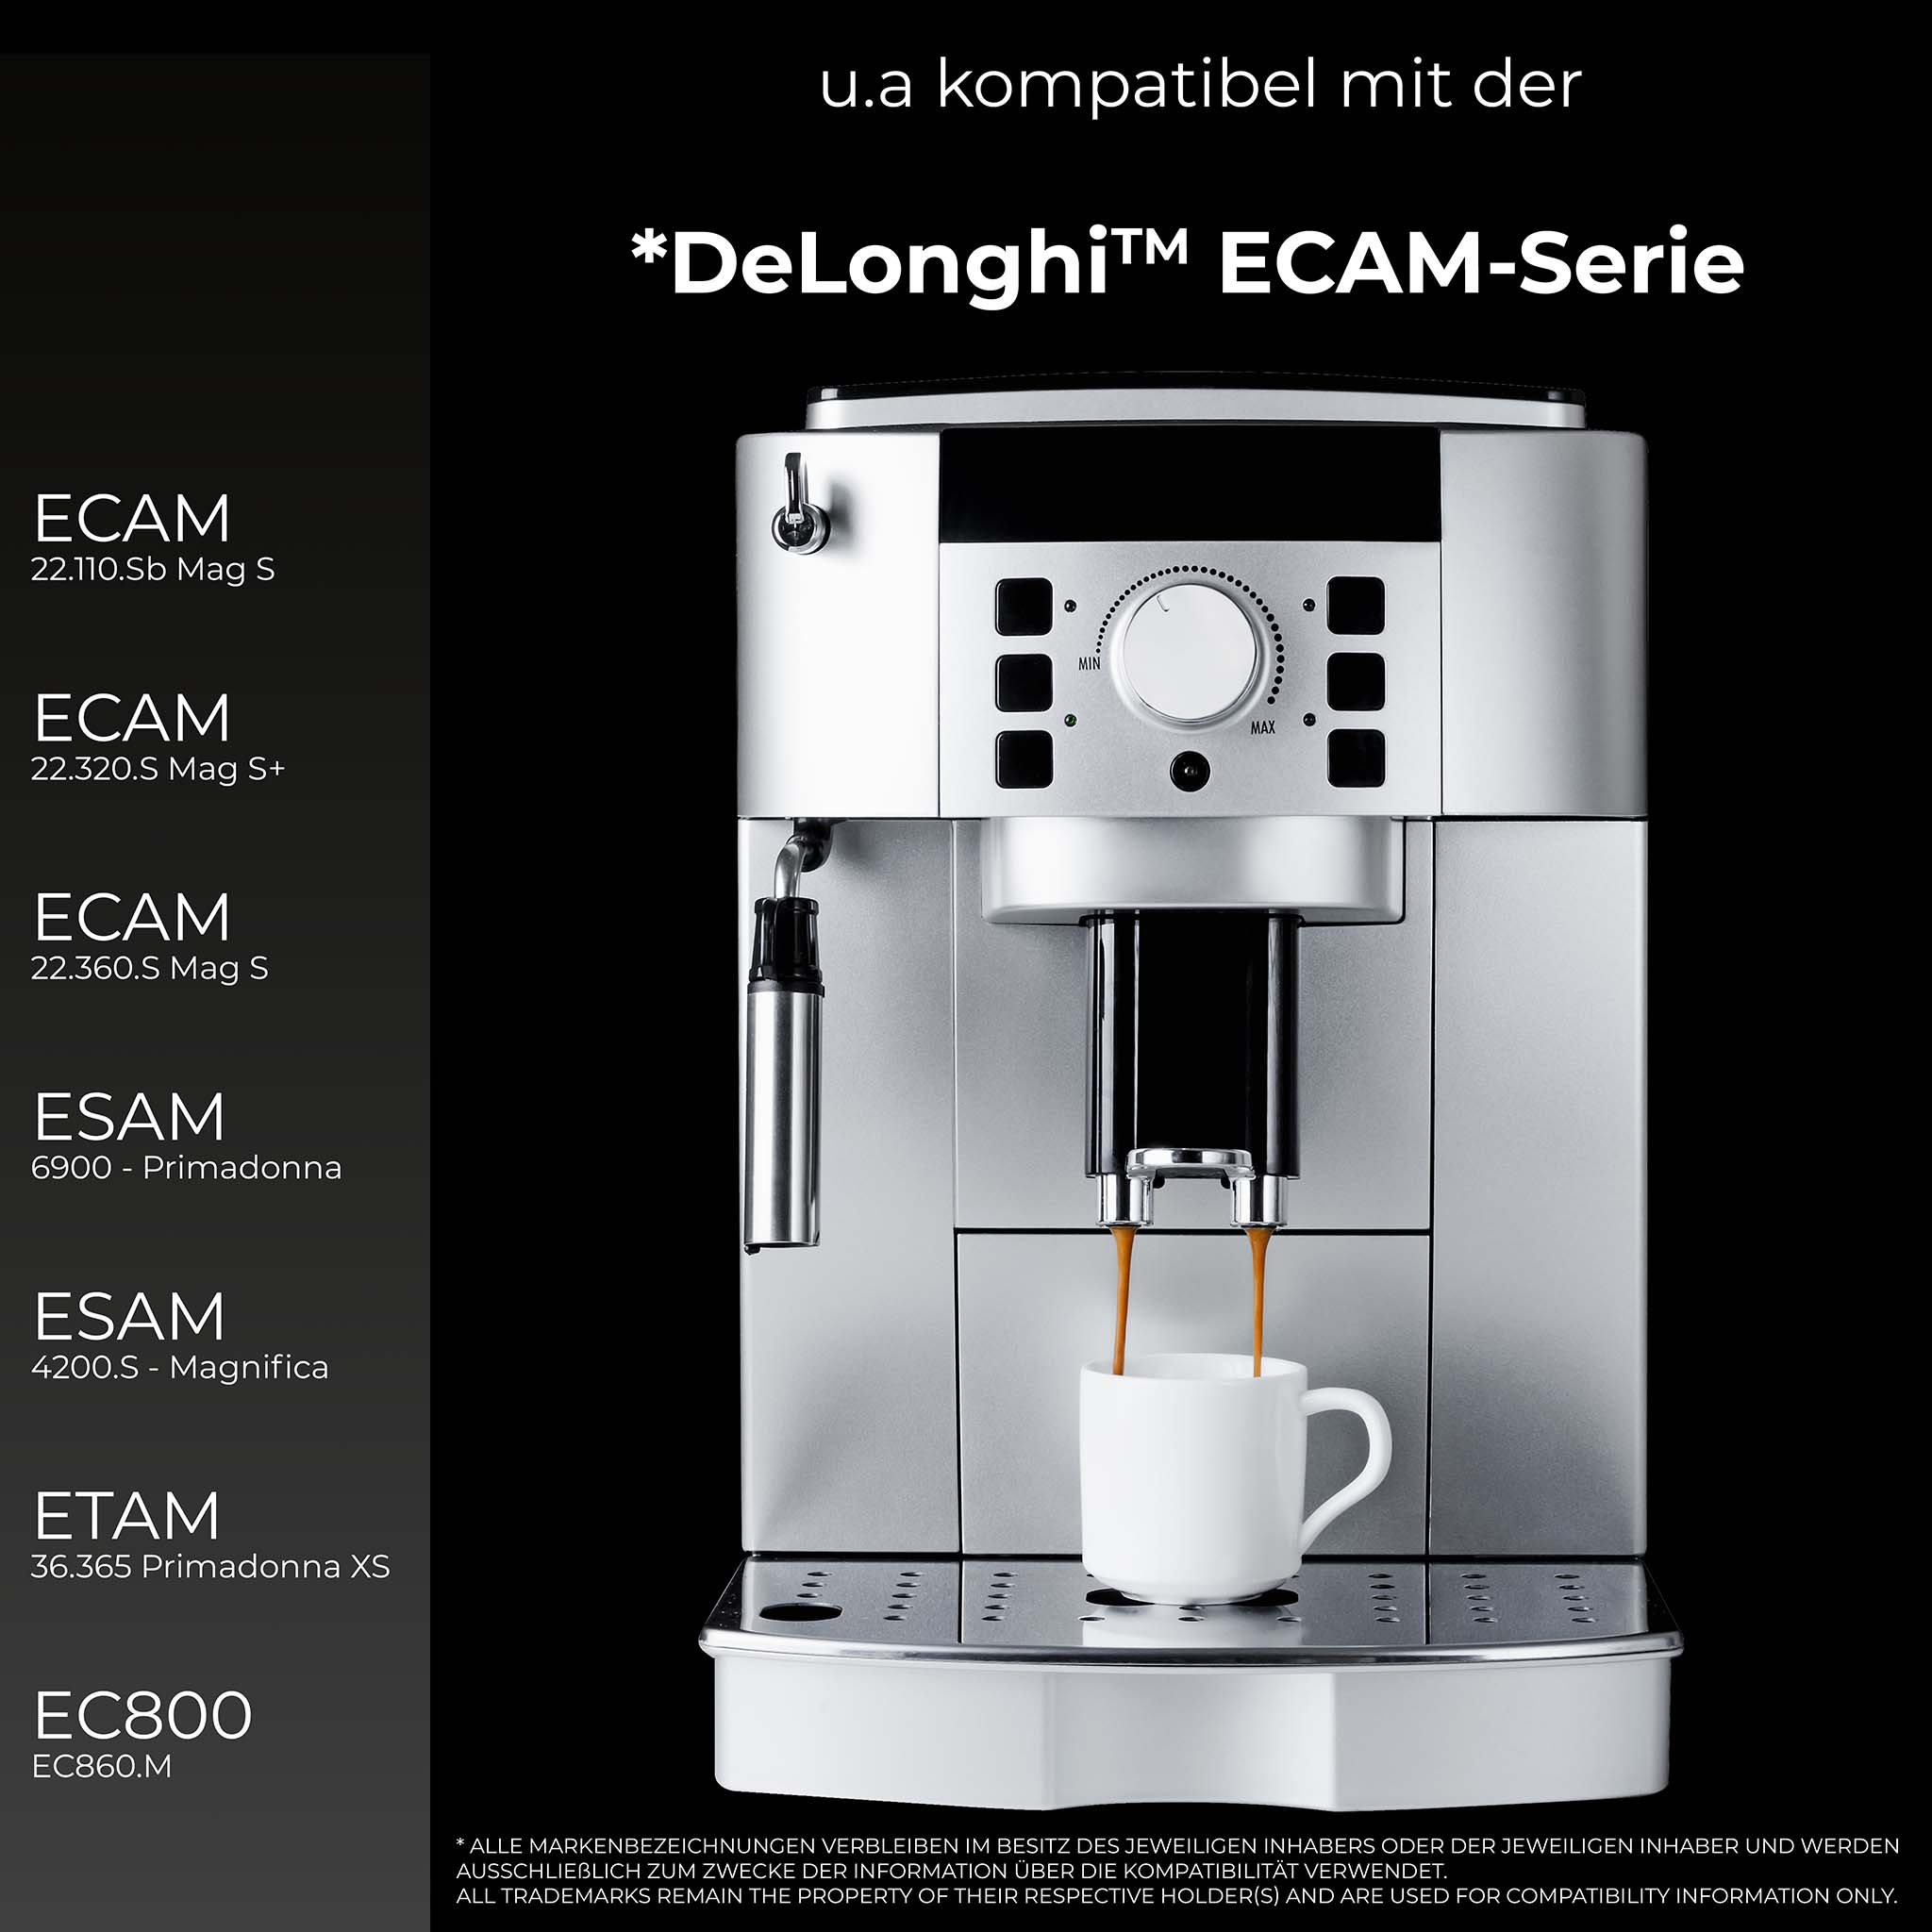 Wiltec CMF006 Filtre Machine à café Filtration Eau Delonghi